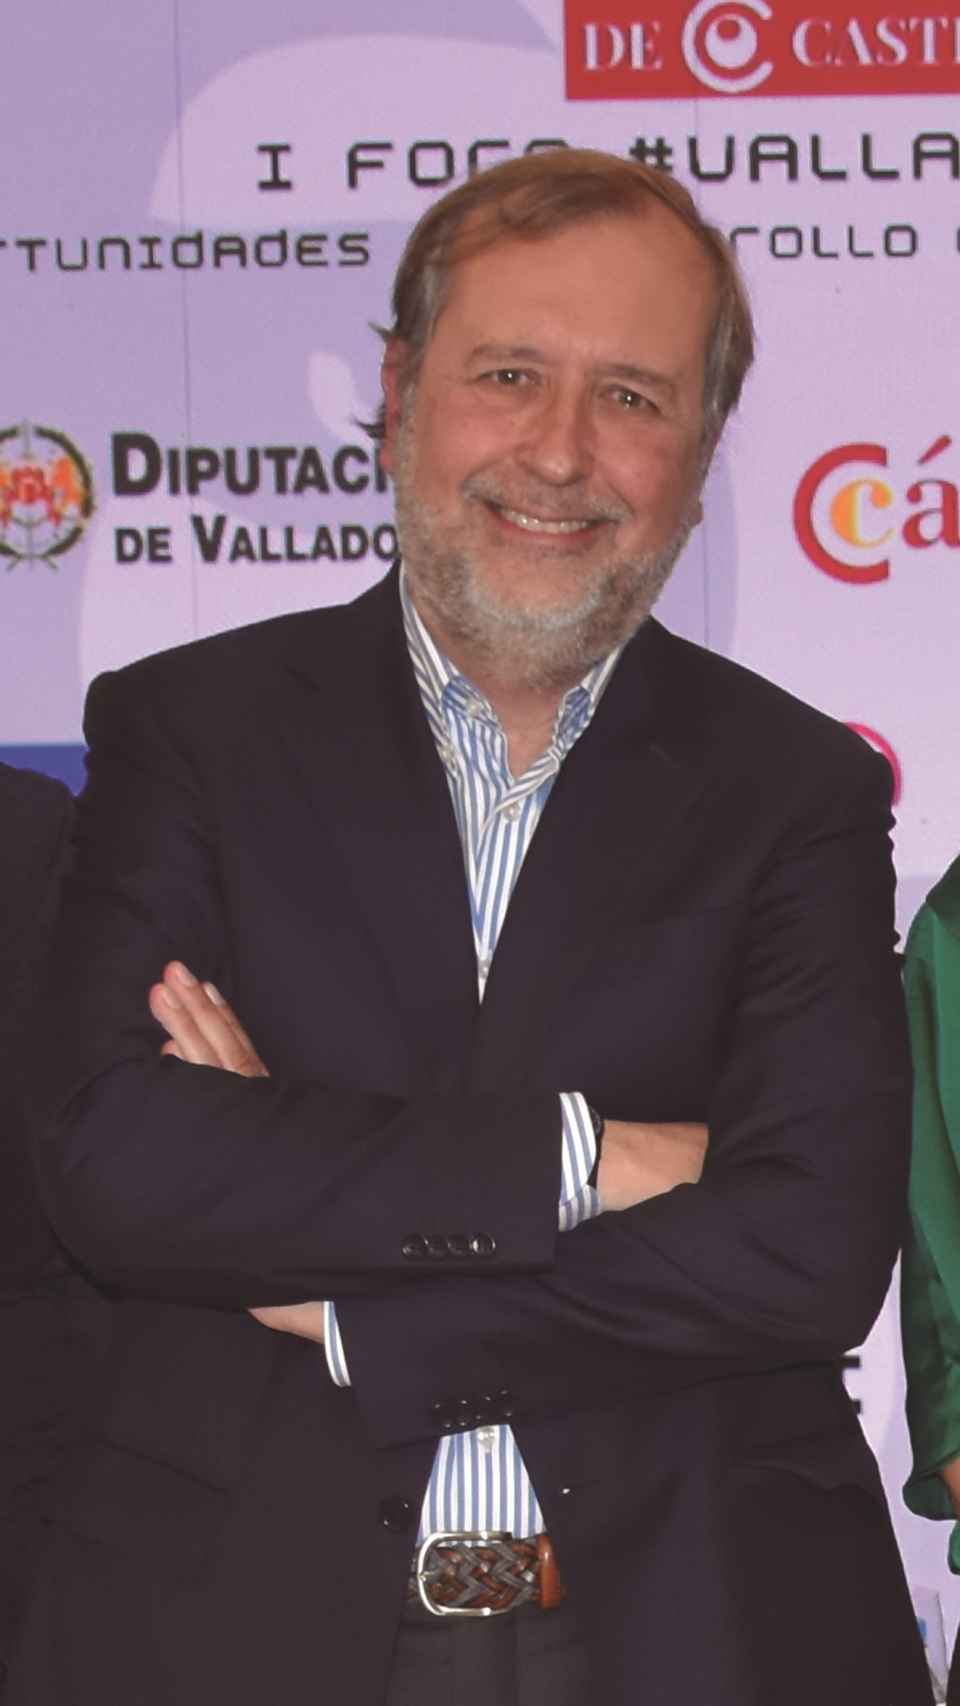 Ángel González Pieras, director general de Turismo de la Junta de Castilla y León